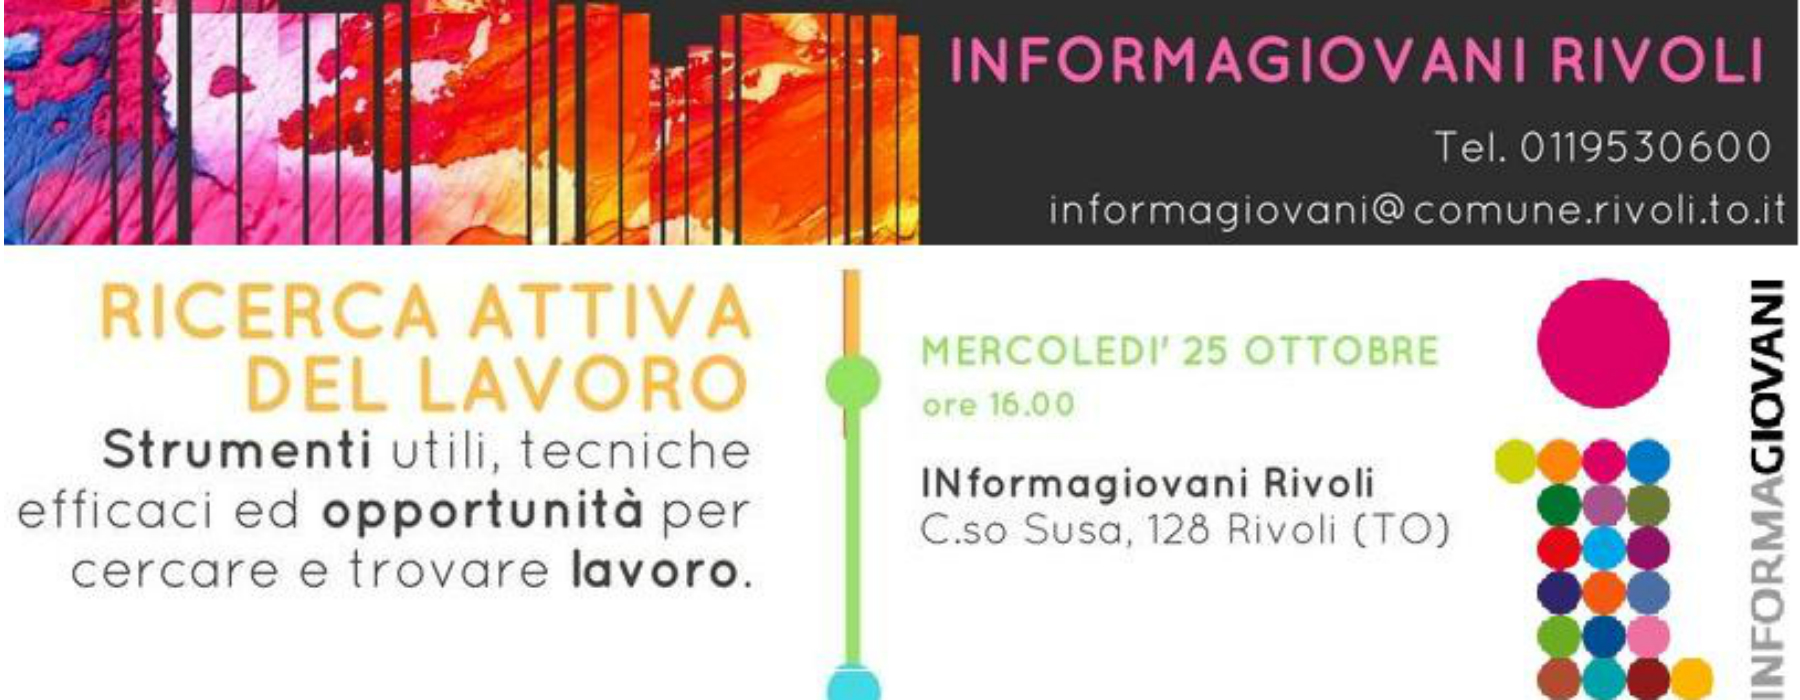 locandina con informazioni dell'evento e logo IG Rivoli